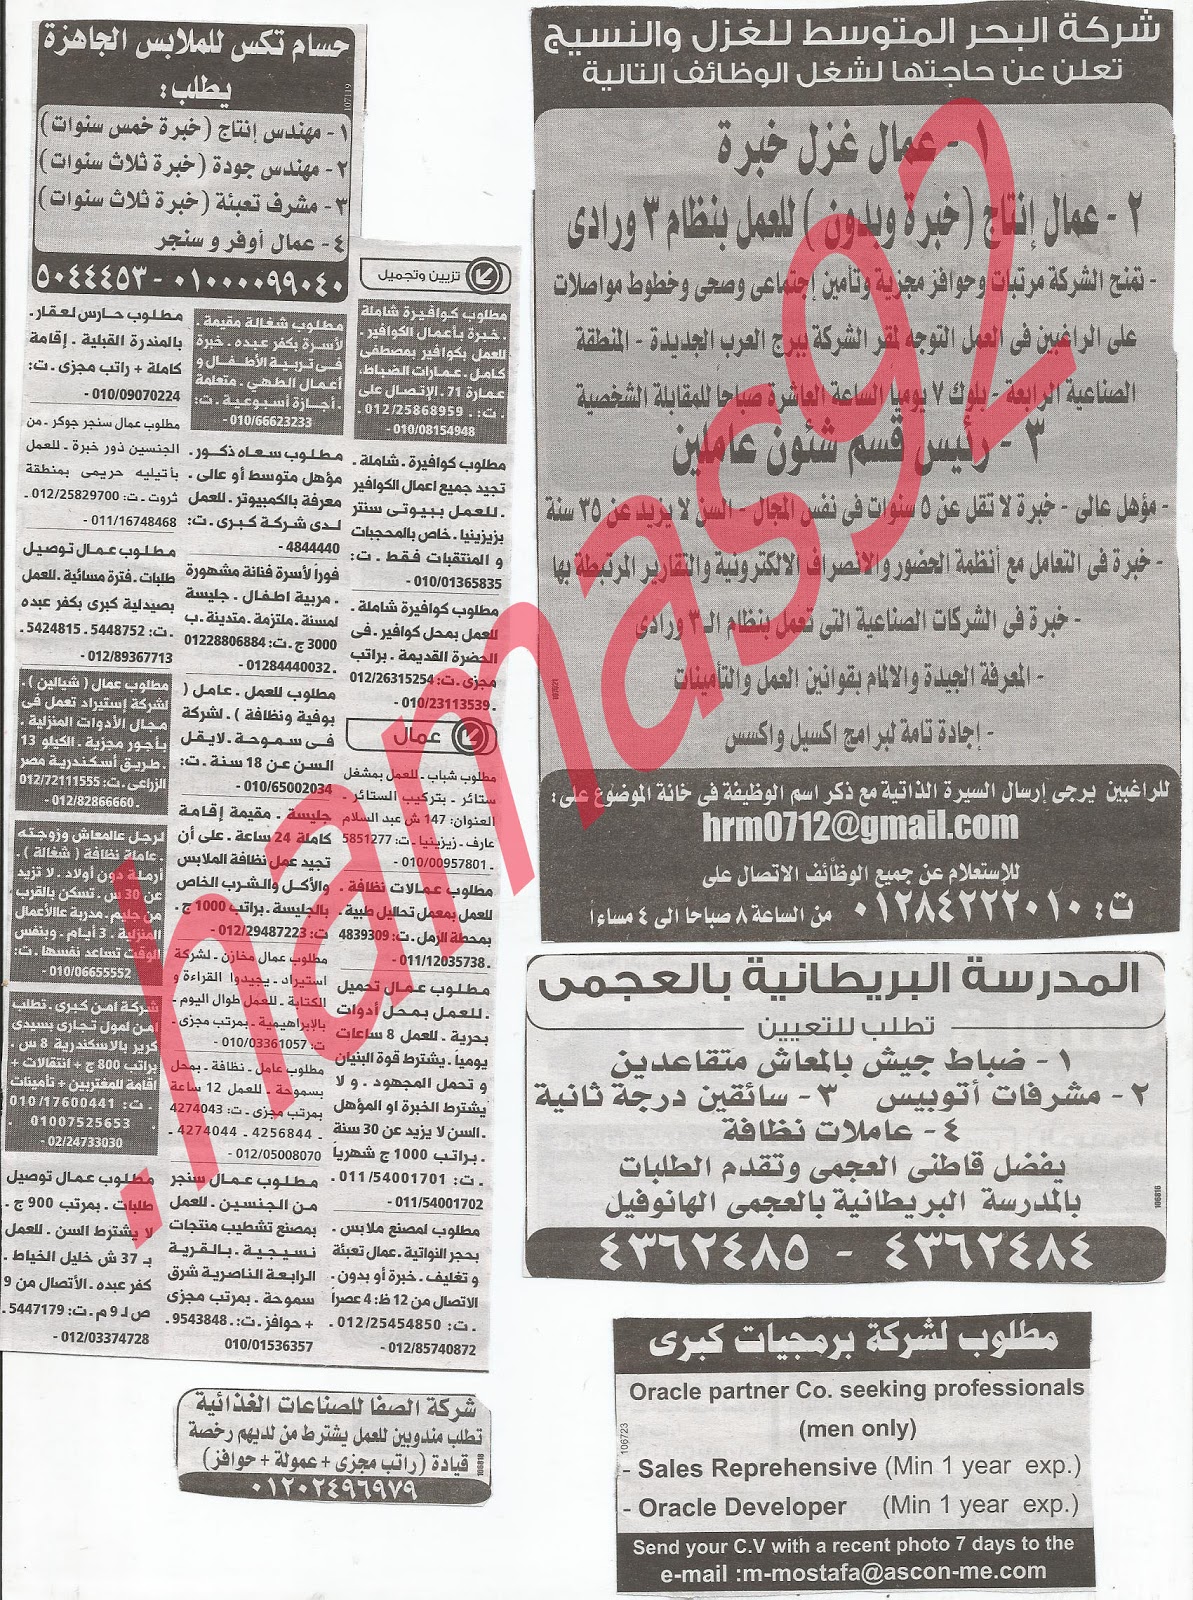 وظائف خالية من جريدة الوسيط الاسكندرية الثلاثاء 4/12/2012 - وظائف عديدة %D9%88+%D8%B3+%D8%B3+3